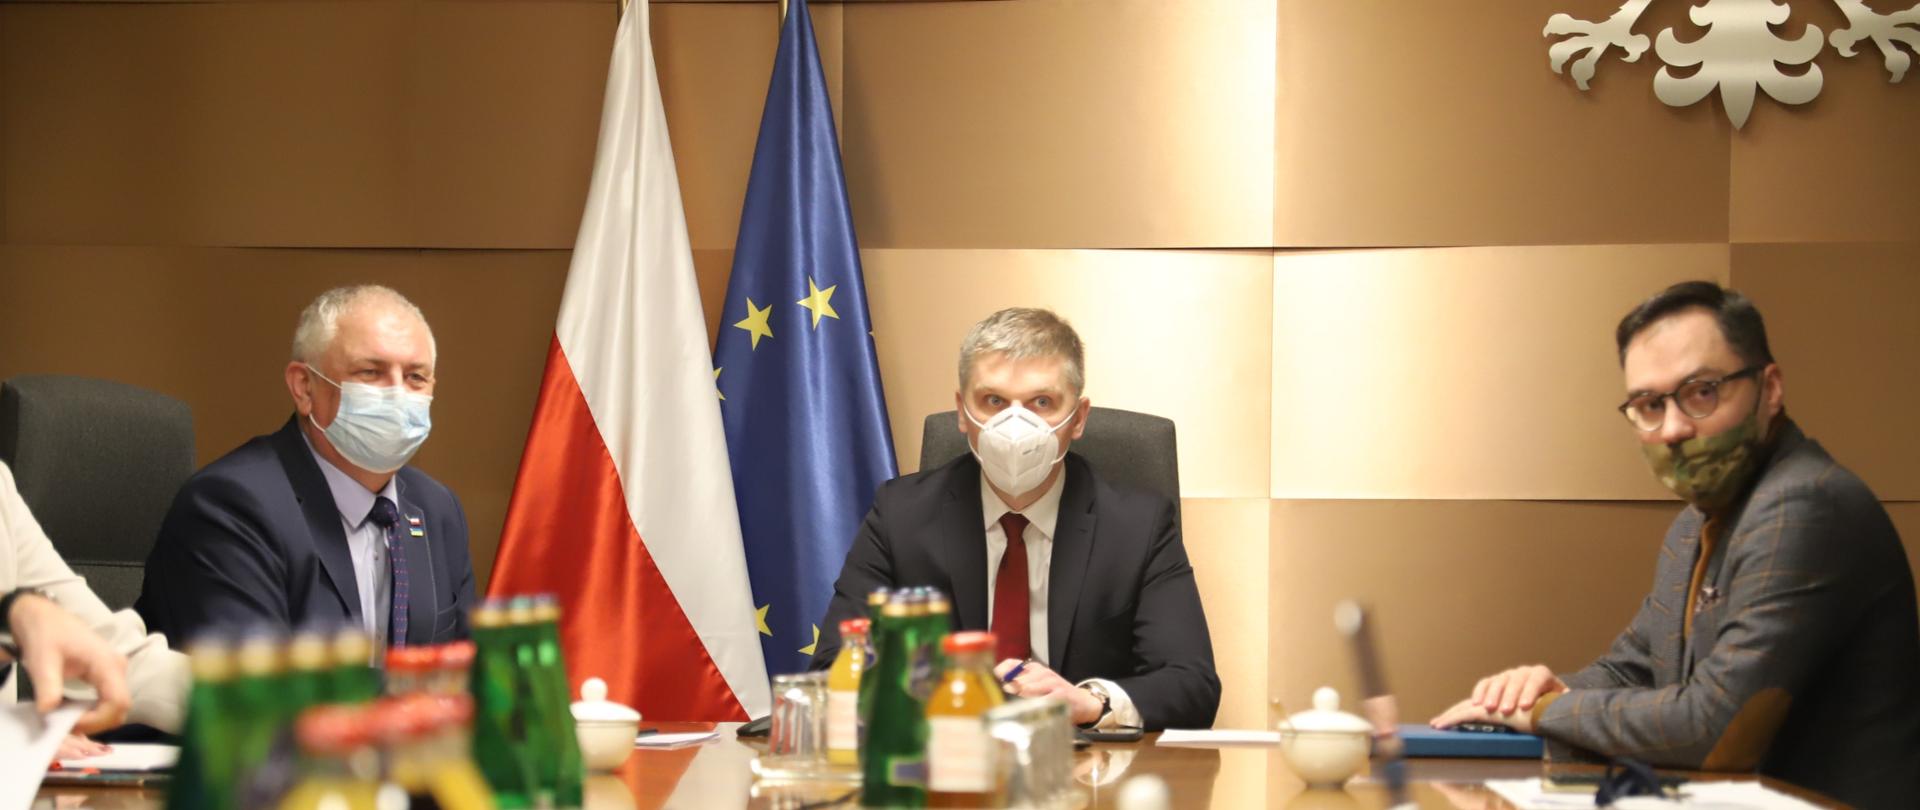 na zdjęciu Minister Piotr Nowak z wiceministrem Grzegorzem Piechowiakiem i wiceministrem Michałem Wiśniewskim siedzą przy stole